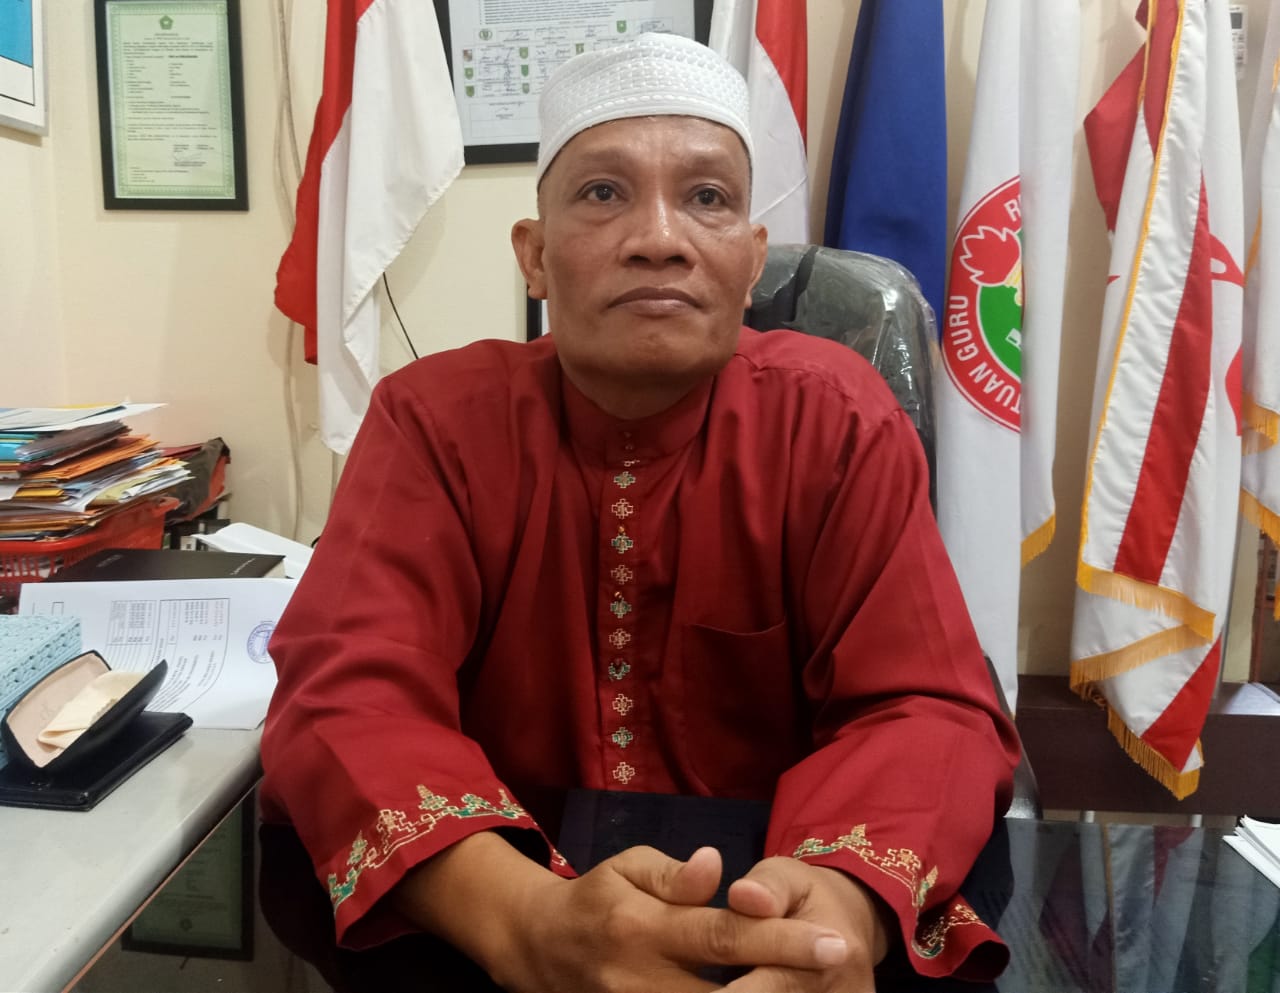 Sekolah Mandiri Buat Soal UAS,  K3S SD Pekanbaru Khawatirkan Soal UAS Belum Sesuai Kaidah Penyusunan Soal